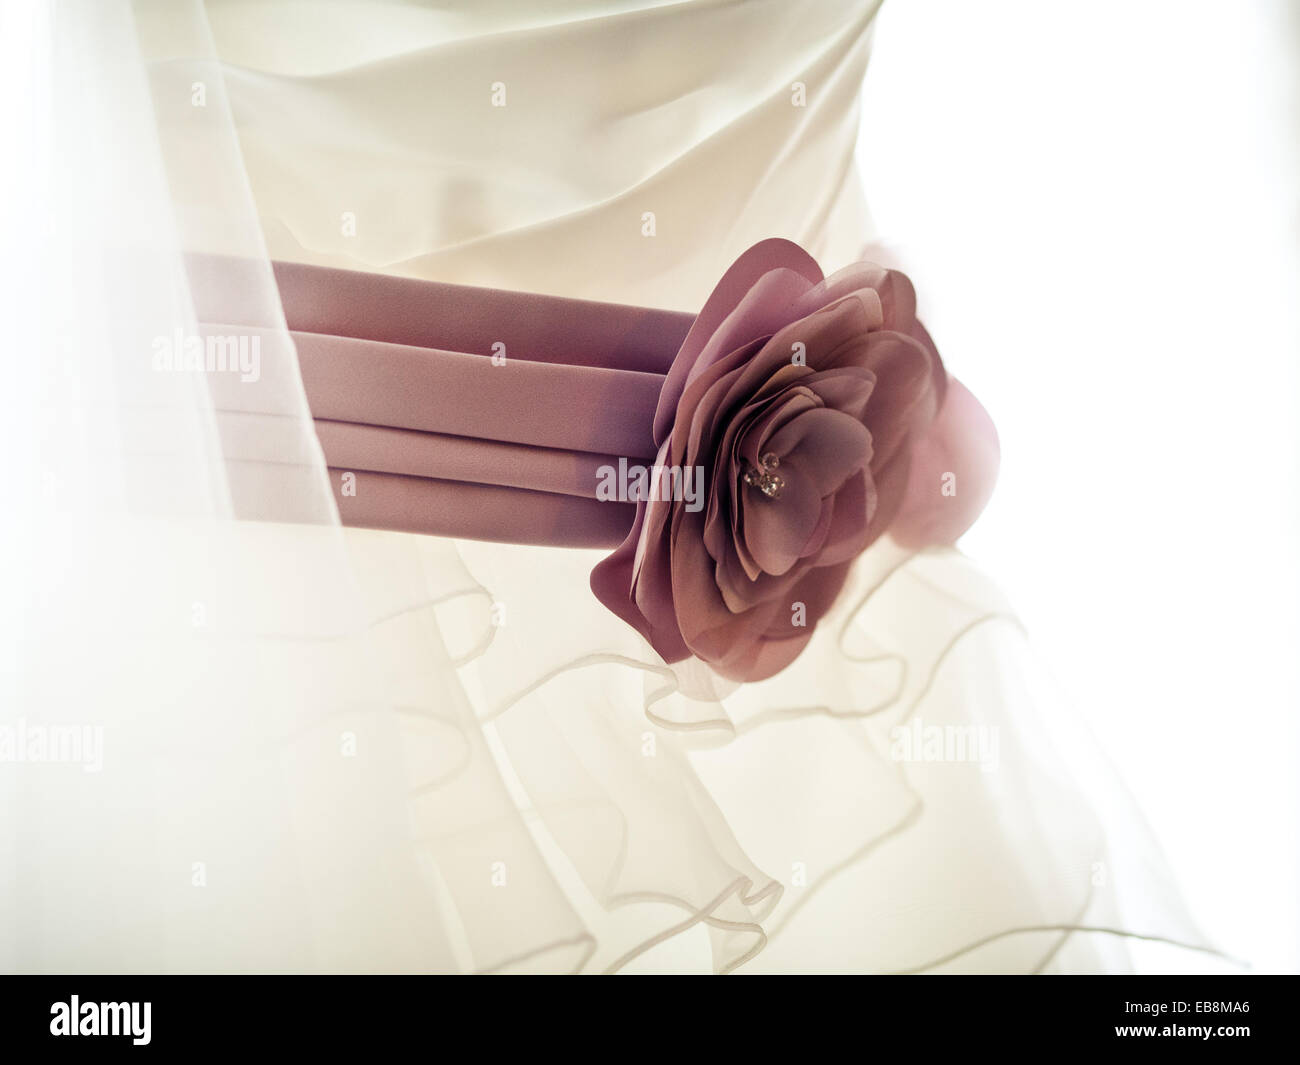 Rosa fiori di seta fascia o cintura sulla crema / bianco abito da sposa,  close up dettaglio Foto stock - Alamy